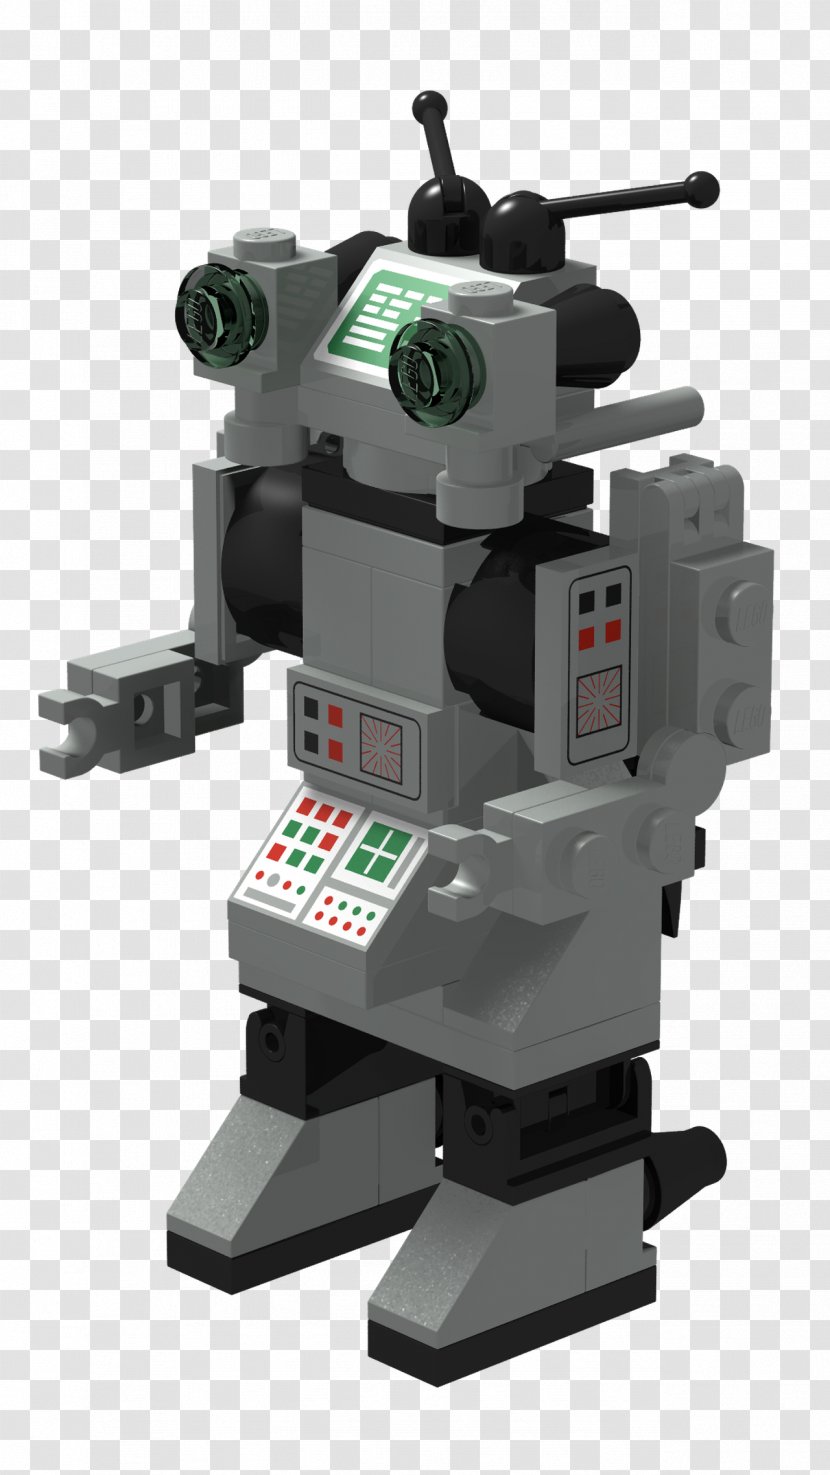 Robot LEGO Science Fiction - Tool - BOTÃO Transparent PNG